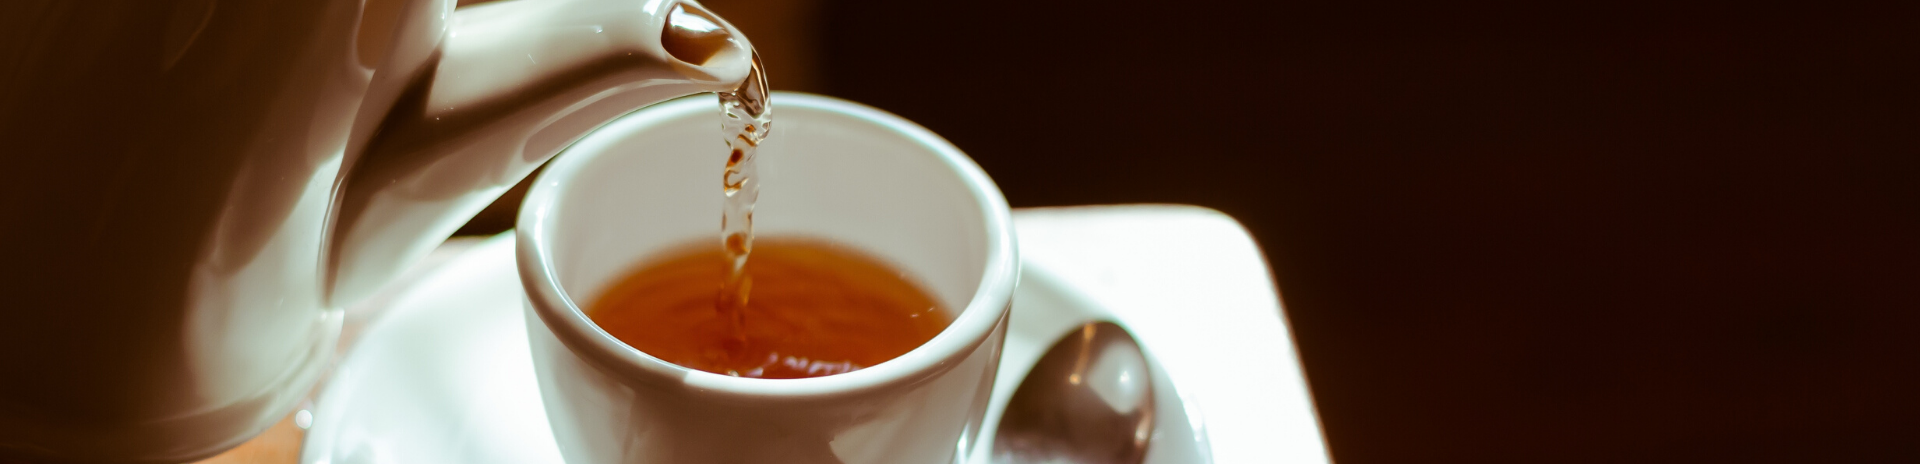 【PURPLE CAVE】 パープルケイブ – 上質なスリランカ紅茶の輸入販売 –